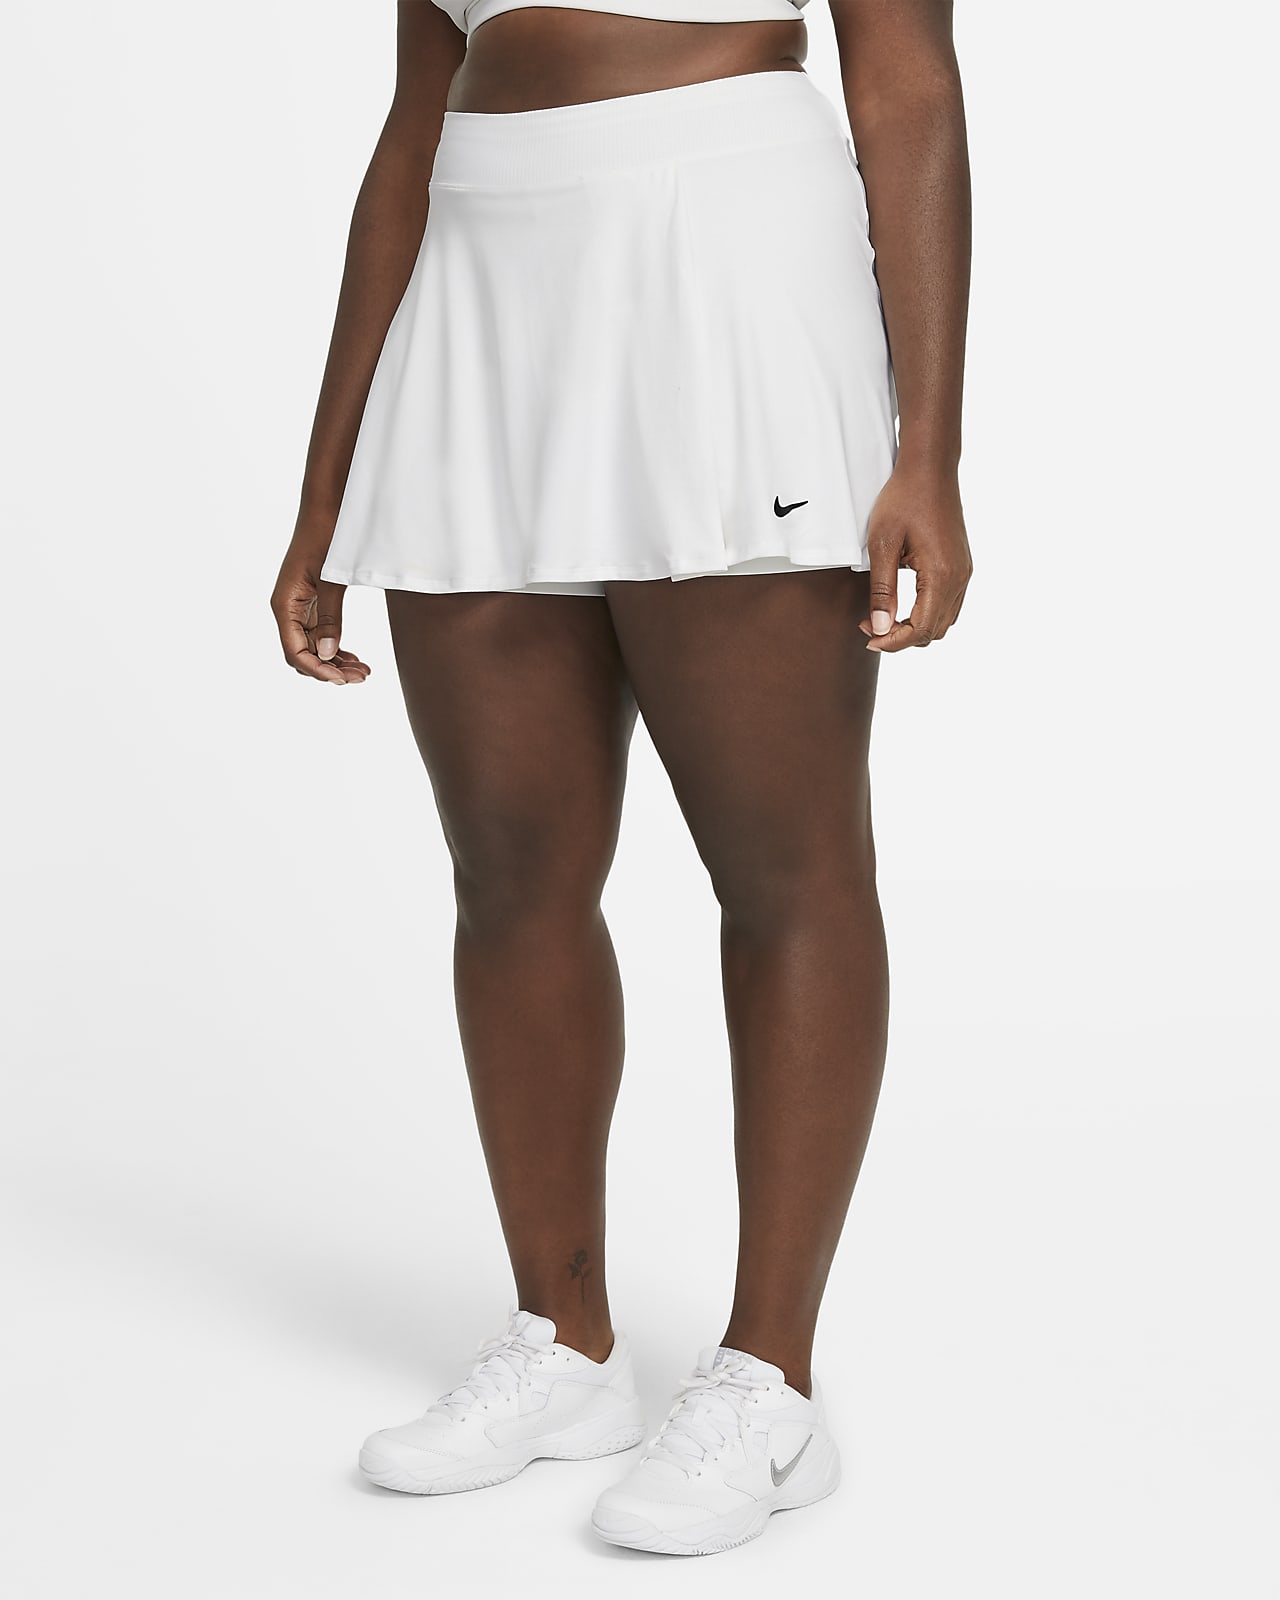 nike tennis white skirt